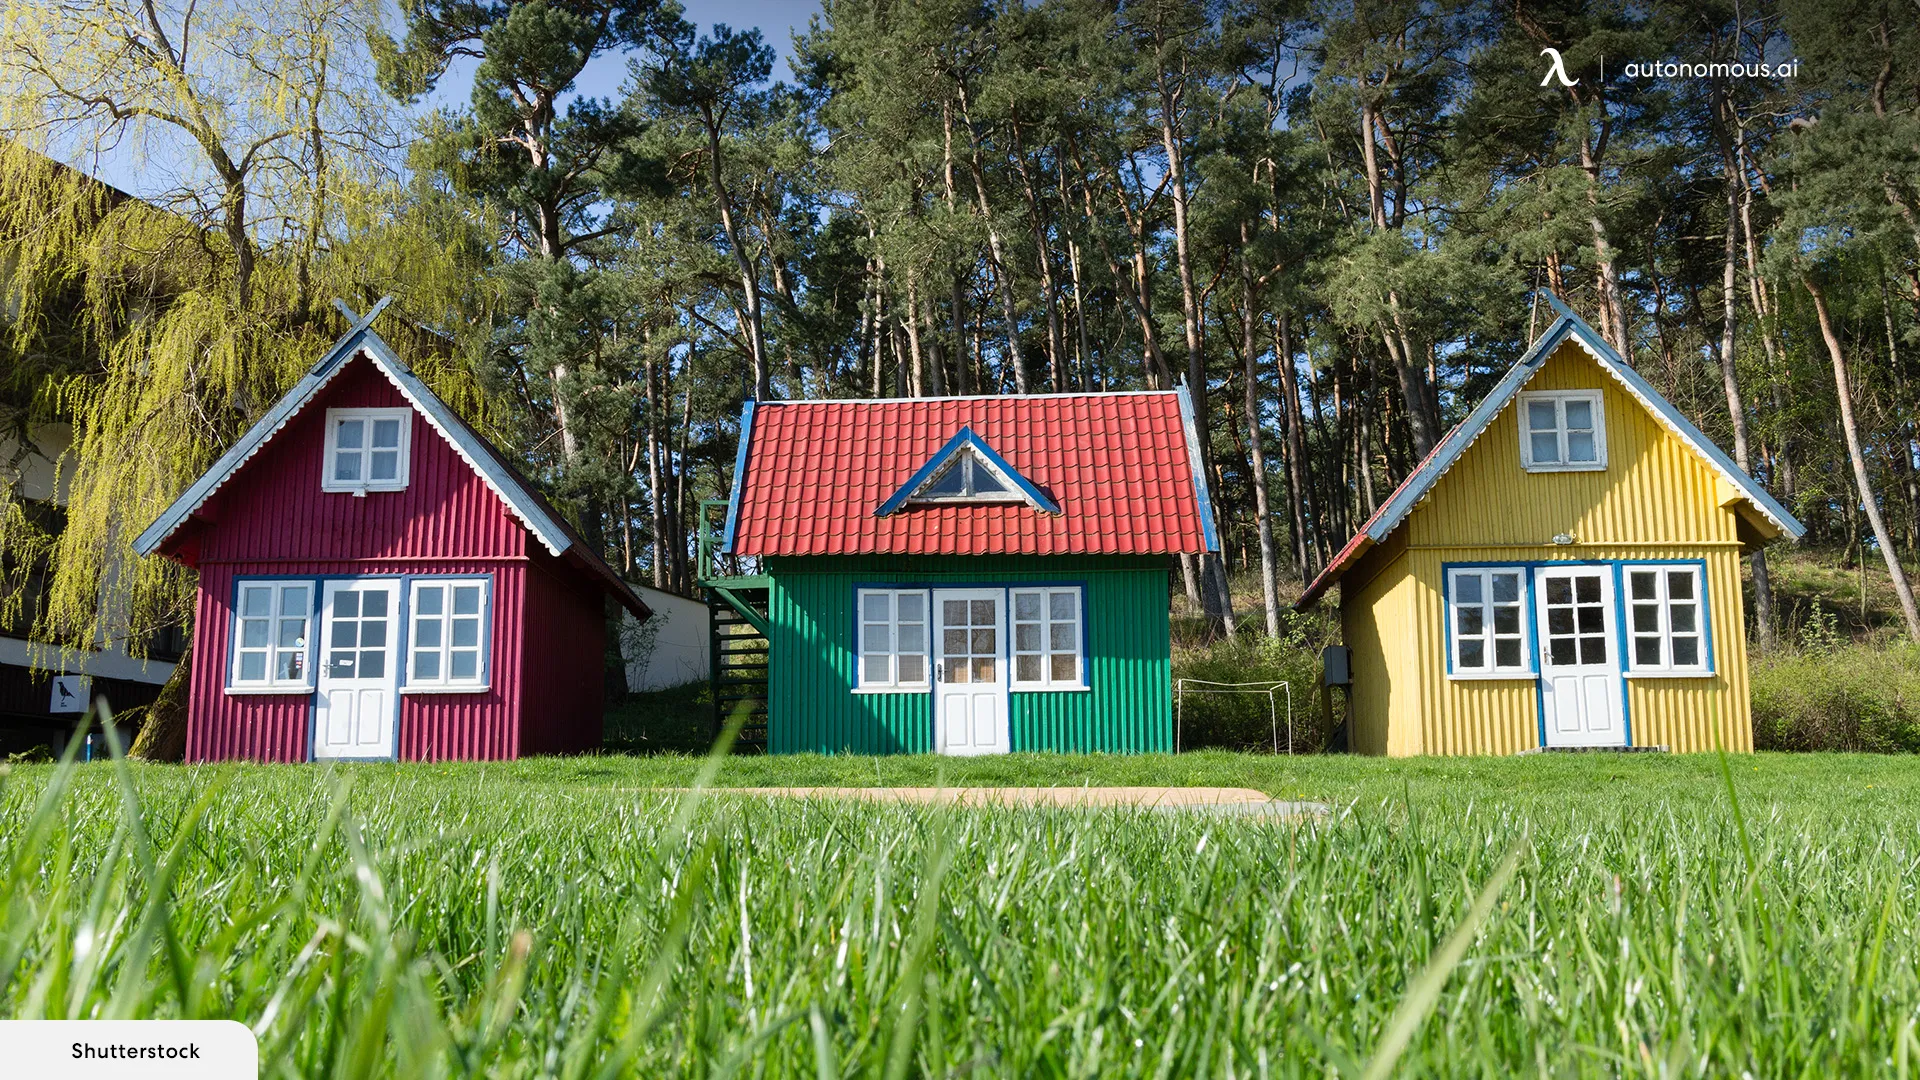 Are tiny prefab homes a good choice?